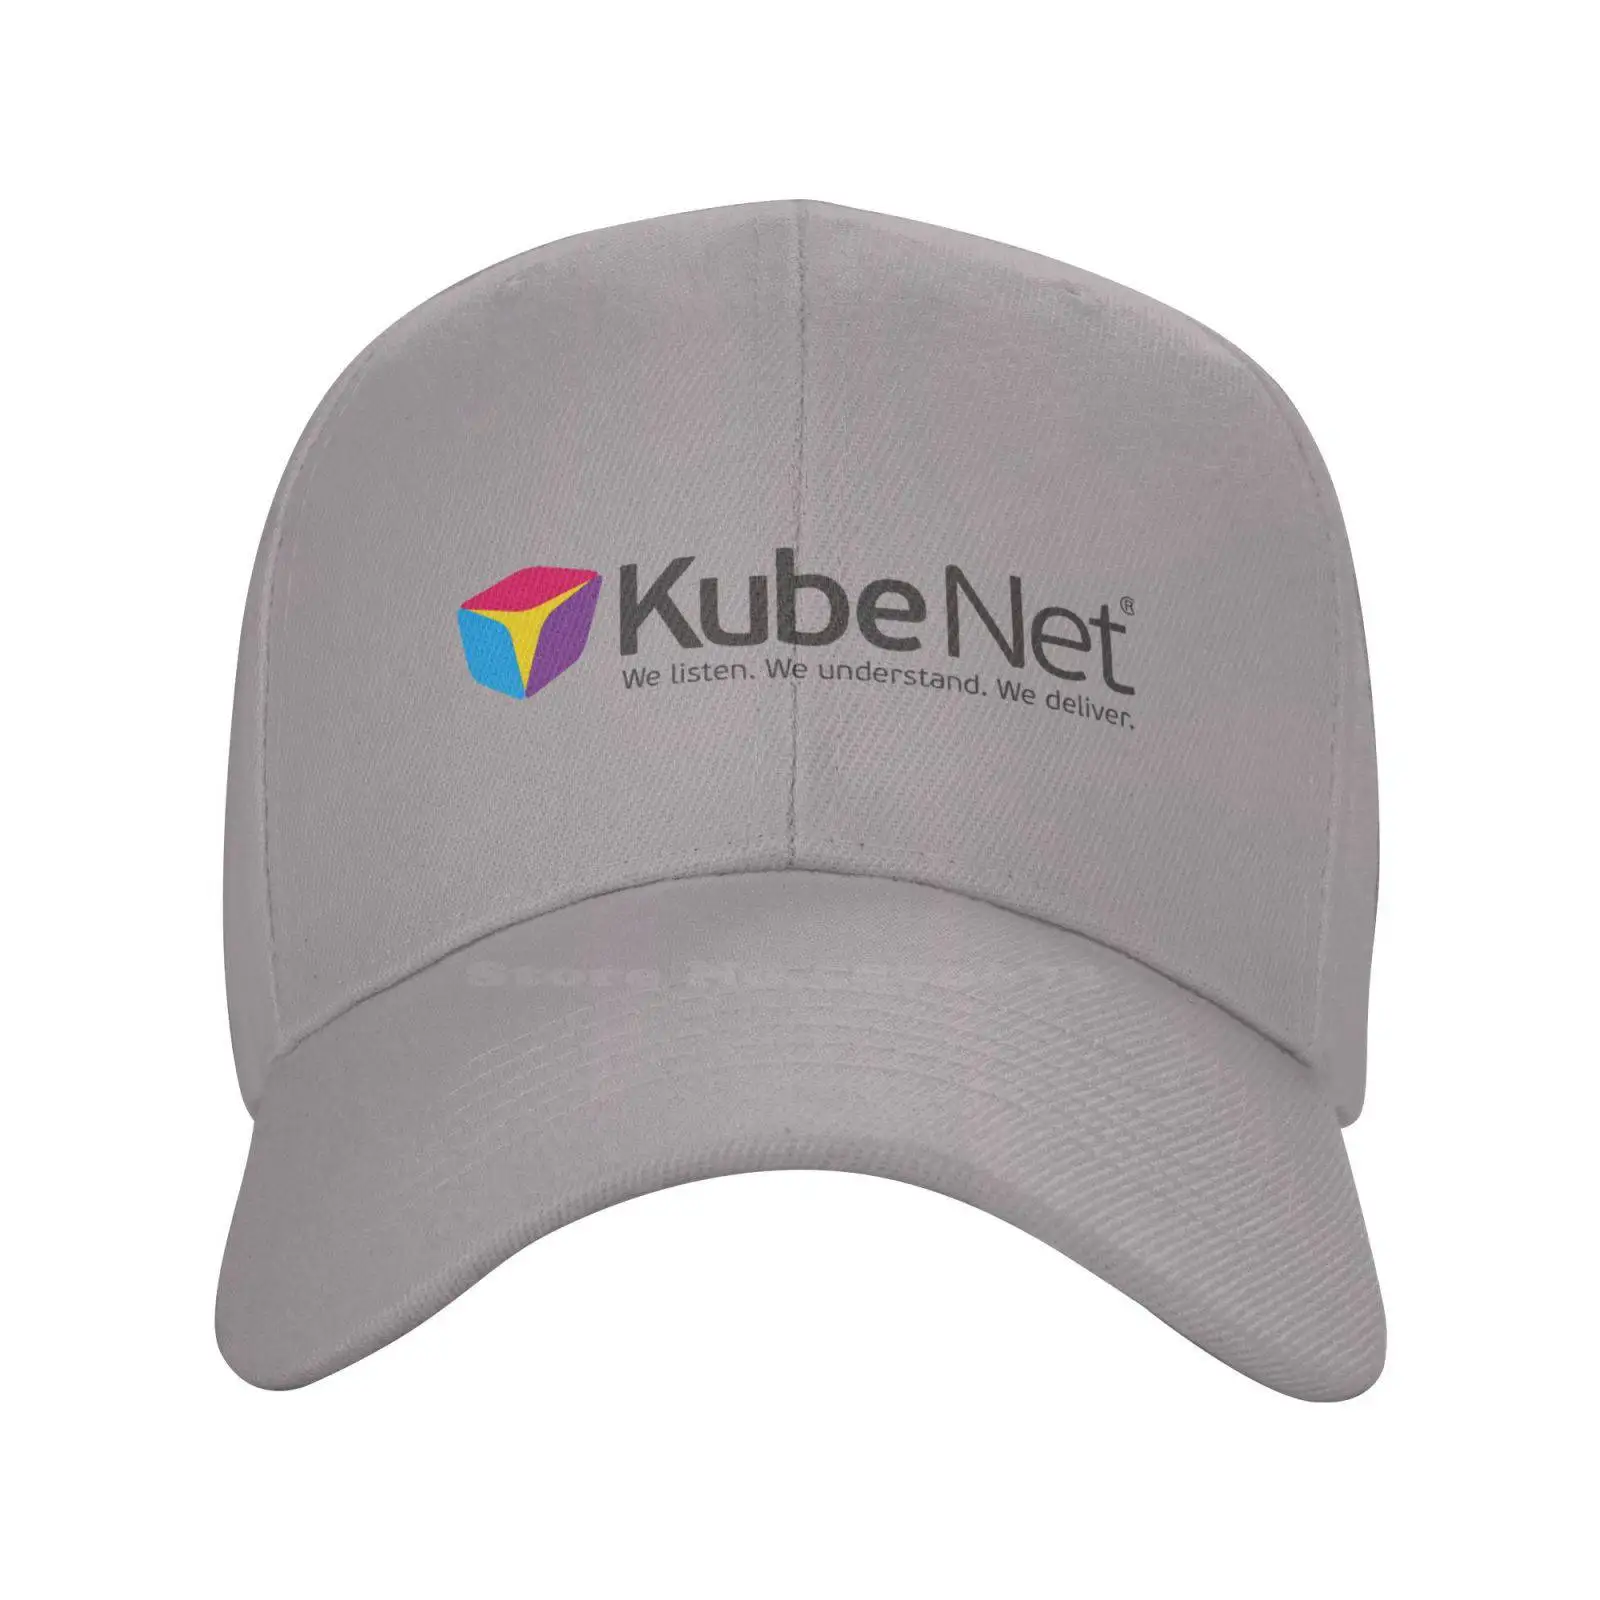 Görüntü /379326-Kubenet-logo-baskı-grafik-rahat-kot-kap-örme-şapka_cdn/share-2.jpeg